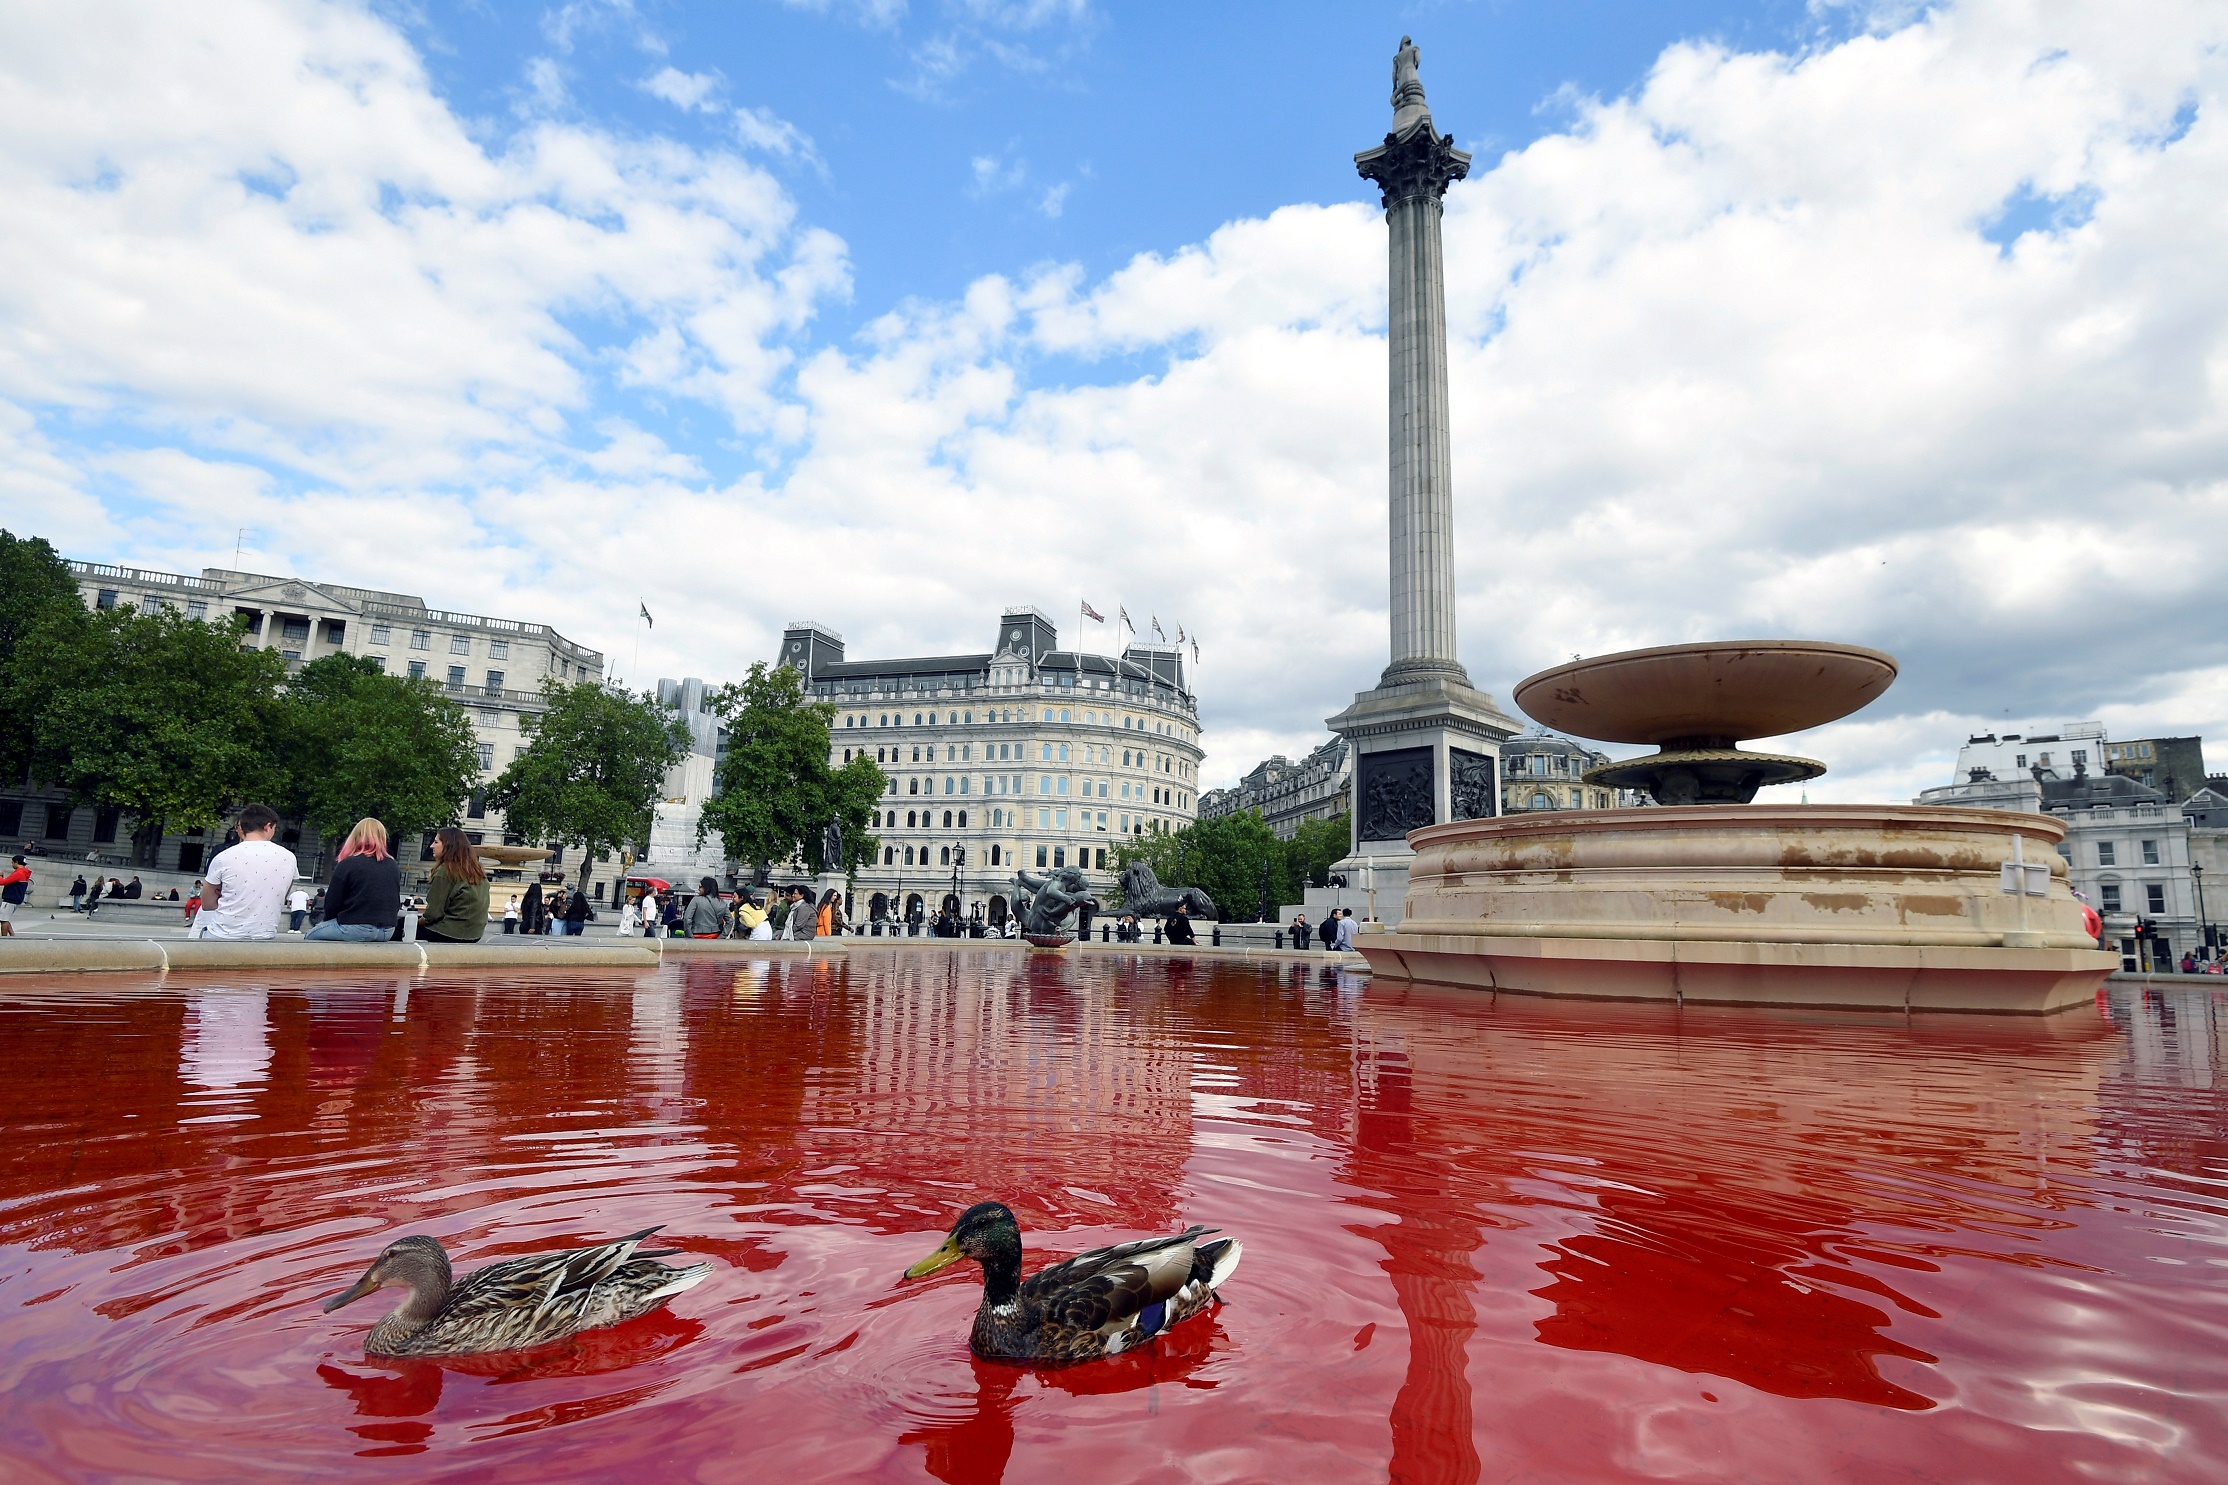 Лондонских уточек красный цвет воды не смутил